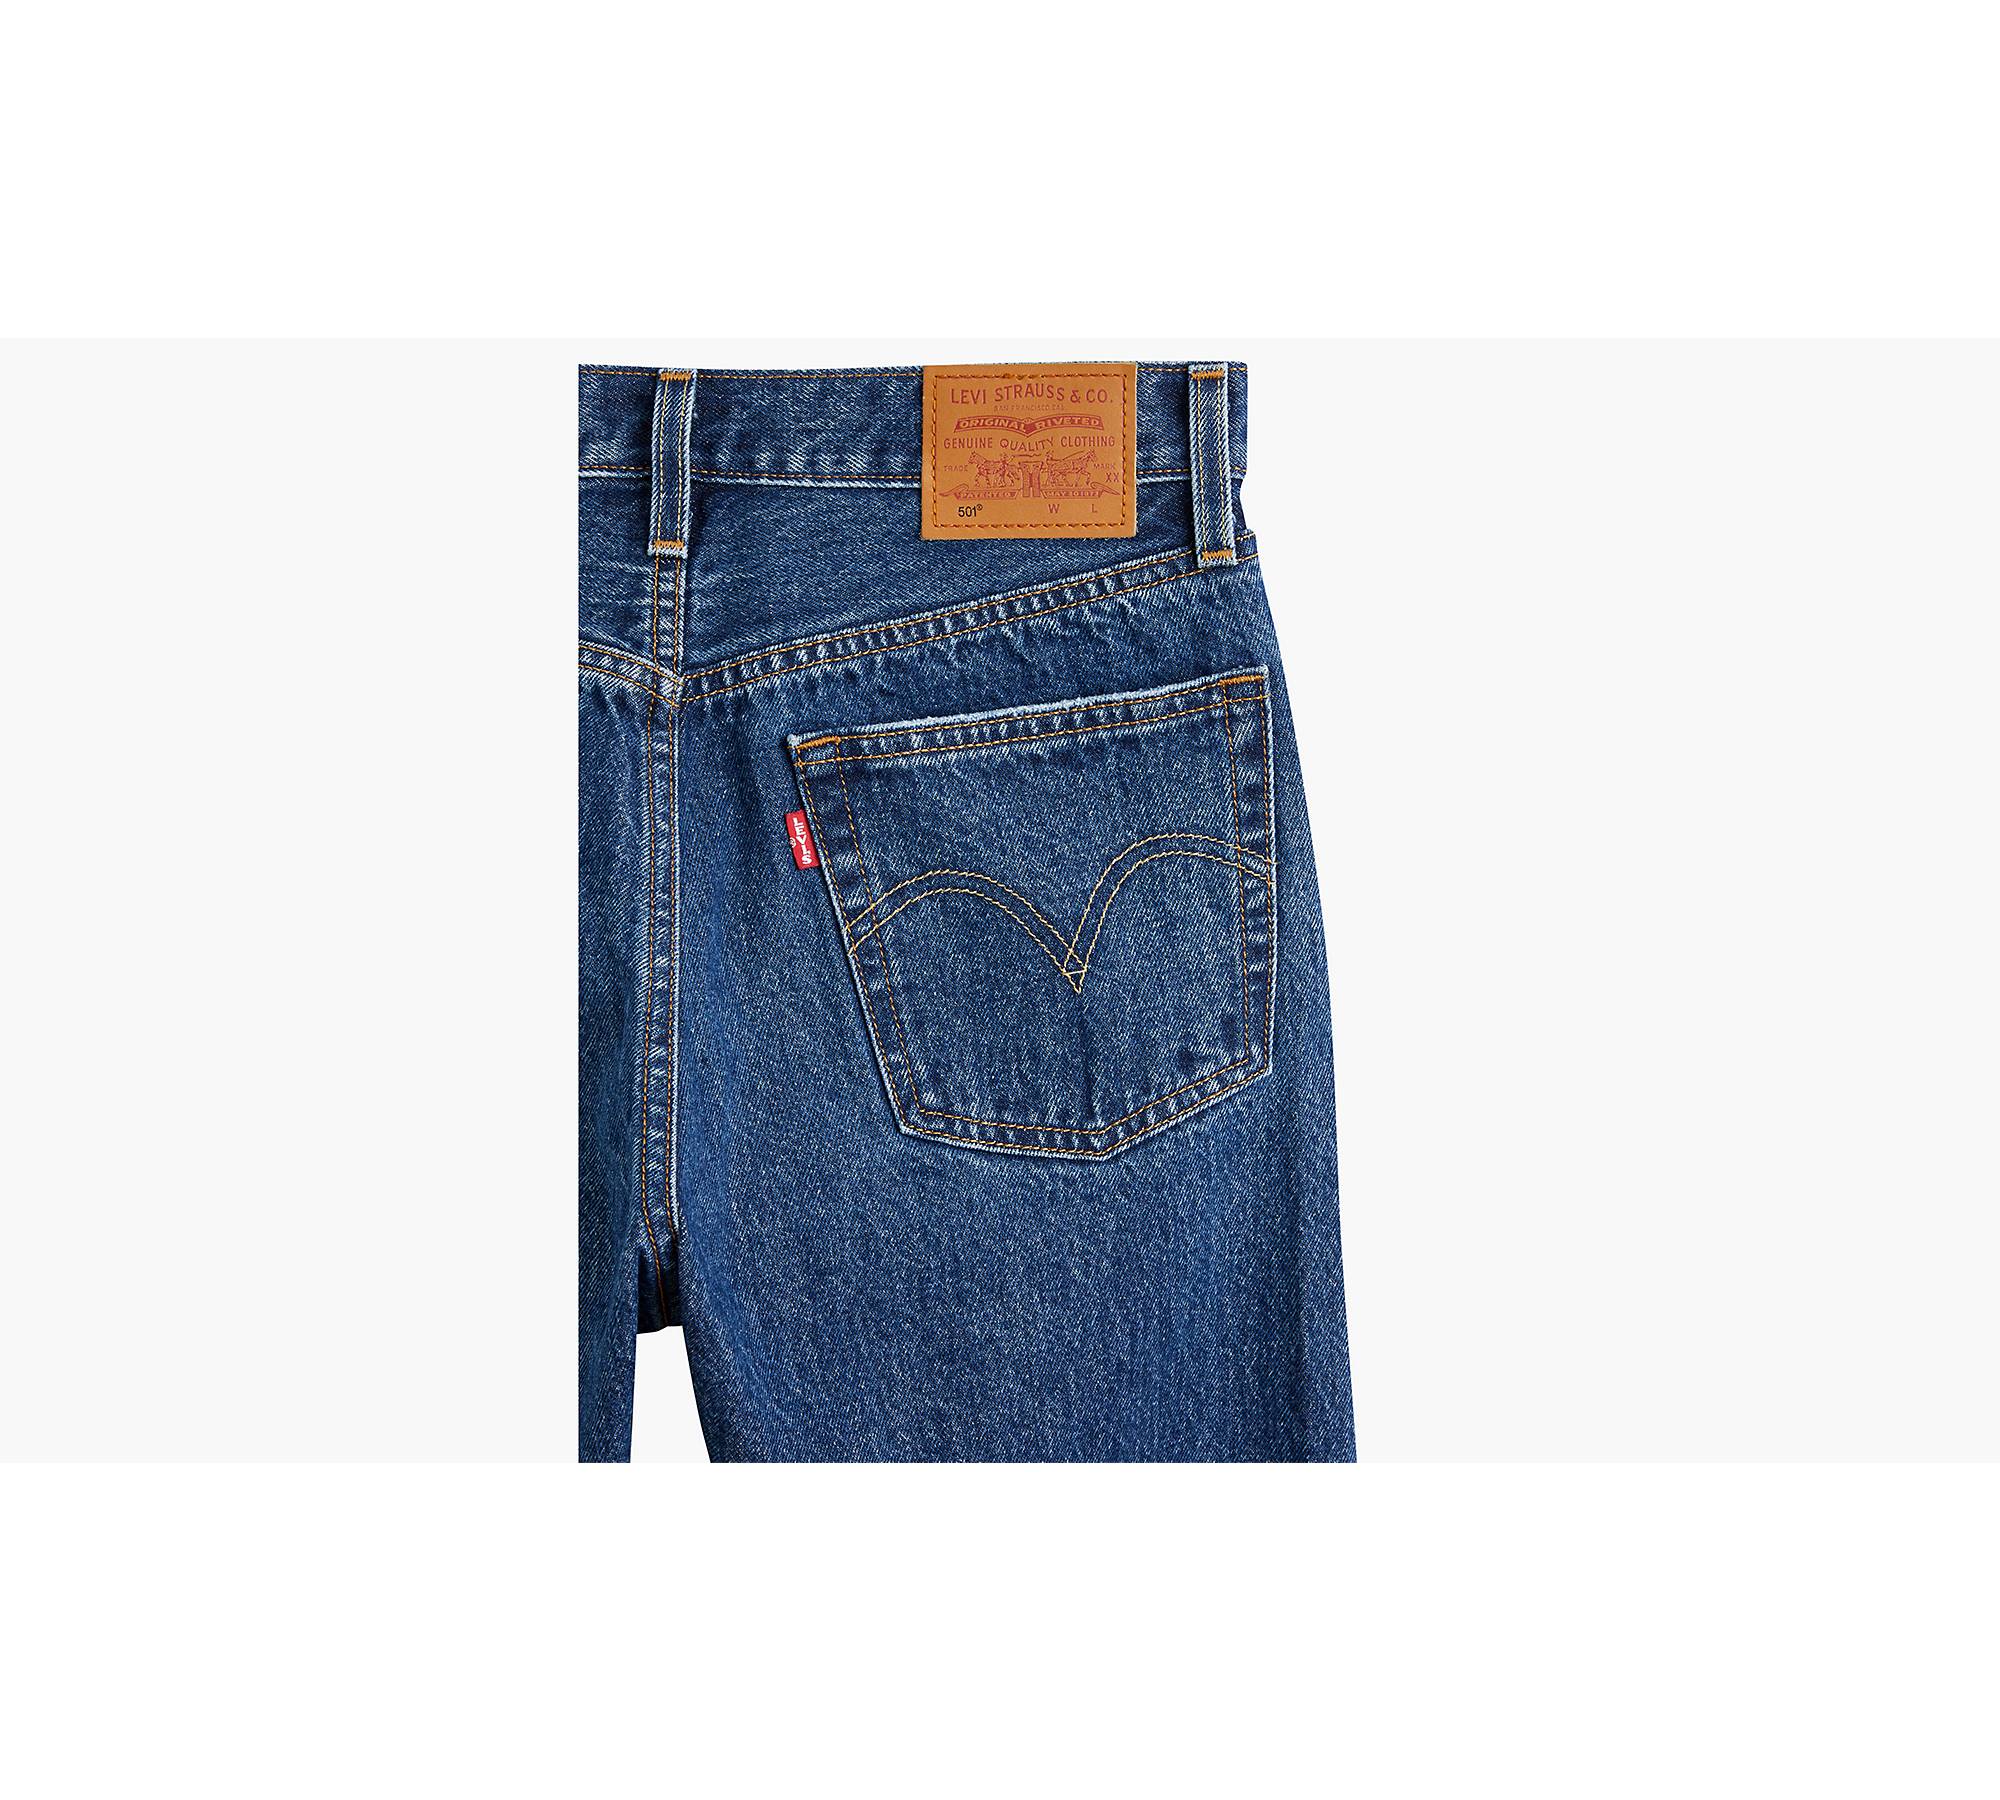 Levis Capri Jeans Womens Size 12 Blue Rolled Cuffs Denim Capris Cropped  Jeans